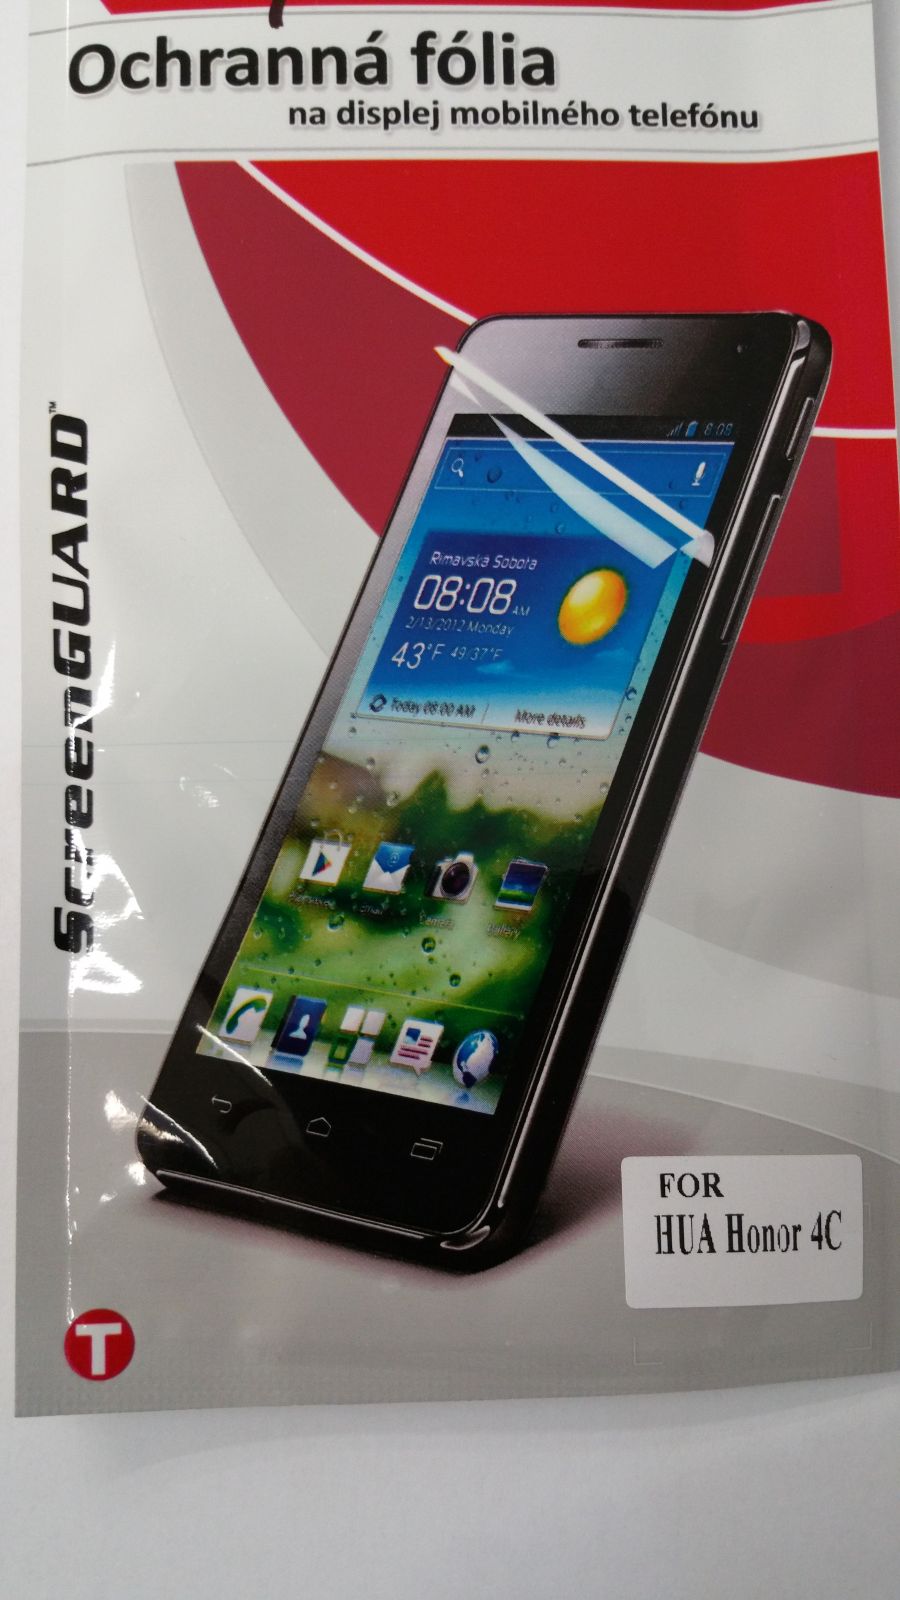 Ochranná folie Mobilnet Huawei Honor 4C